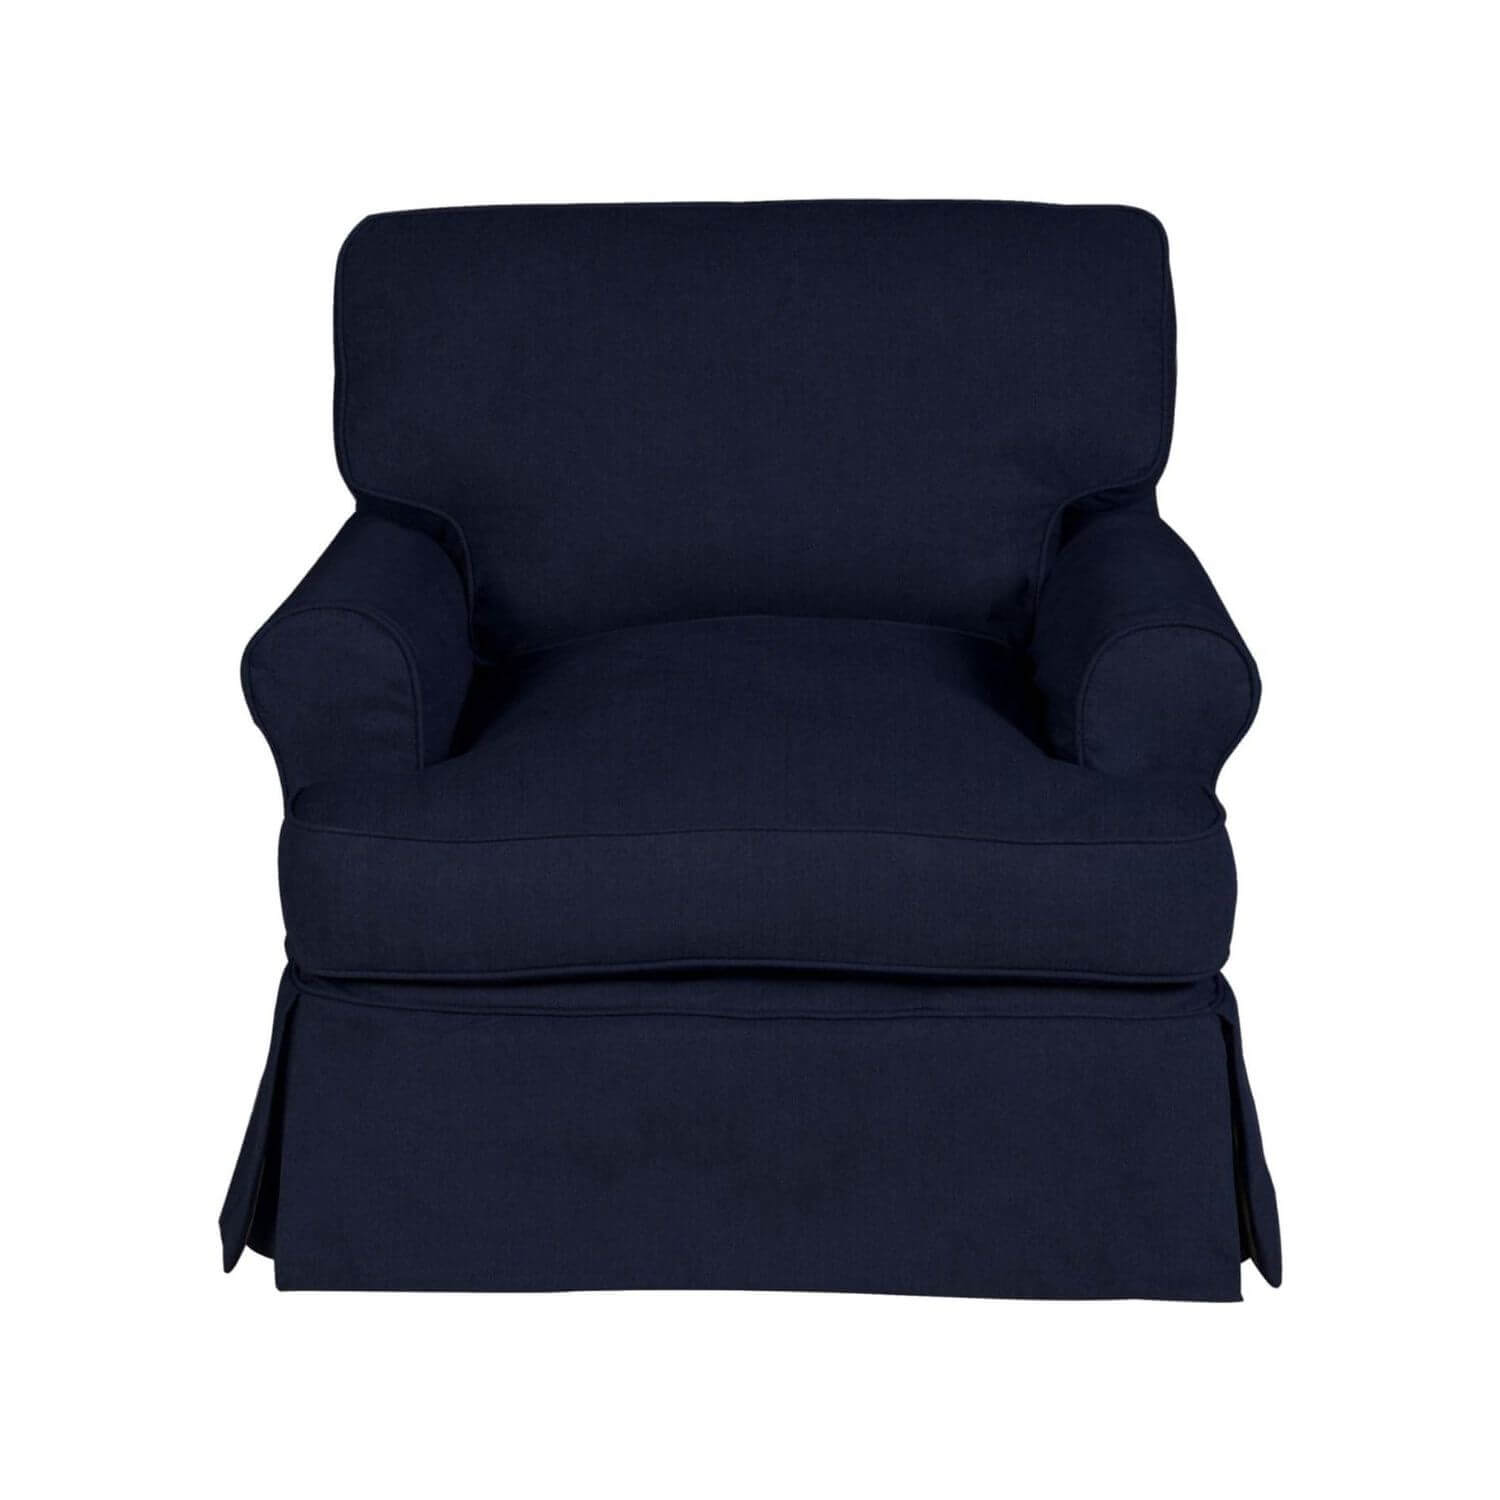 Sunset Trading Horizon Slipcovered Chair | Navy Blue